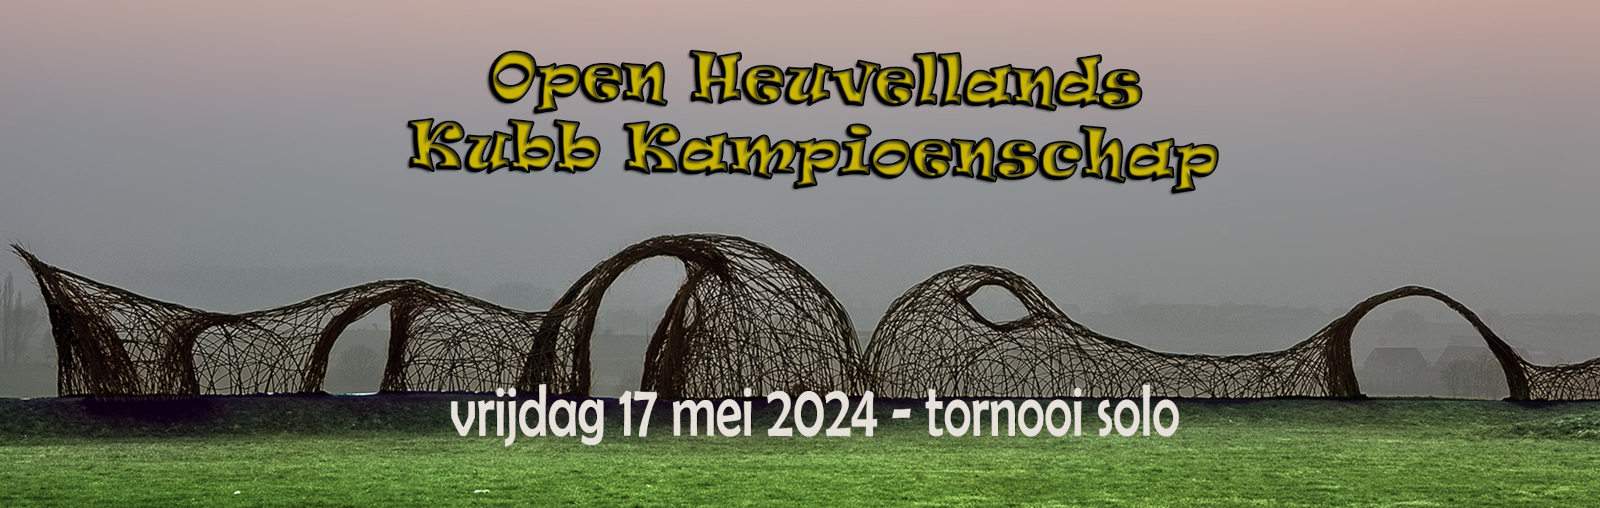 Open Heuvellands Kubb Kampioenschap (solo)